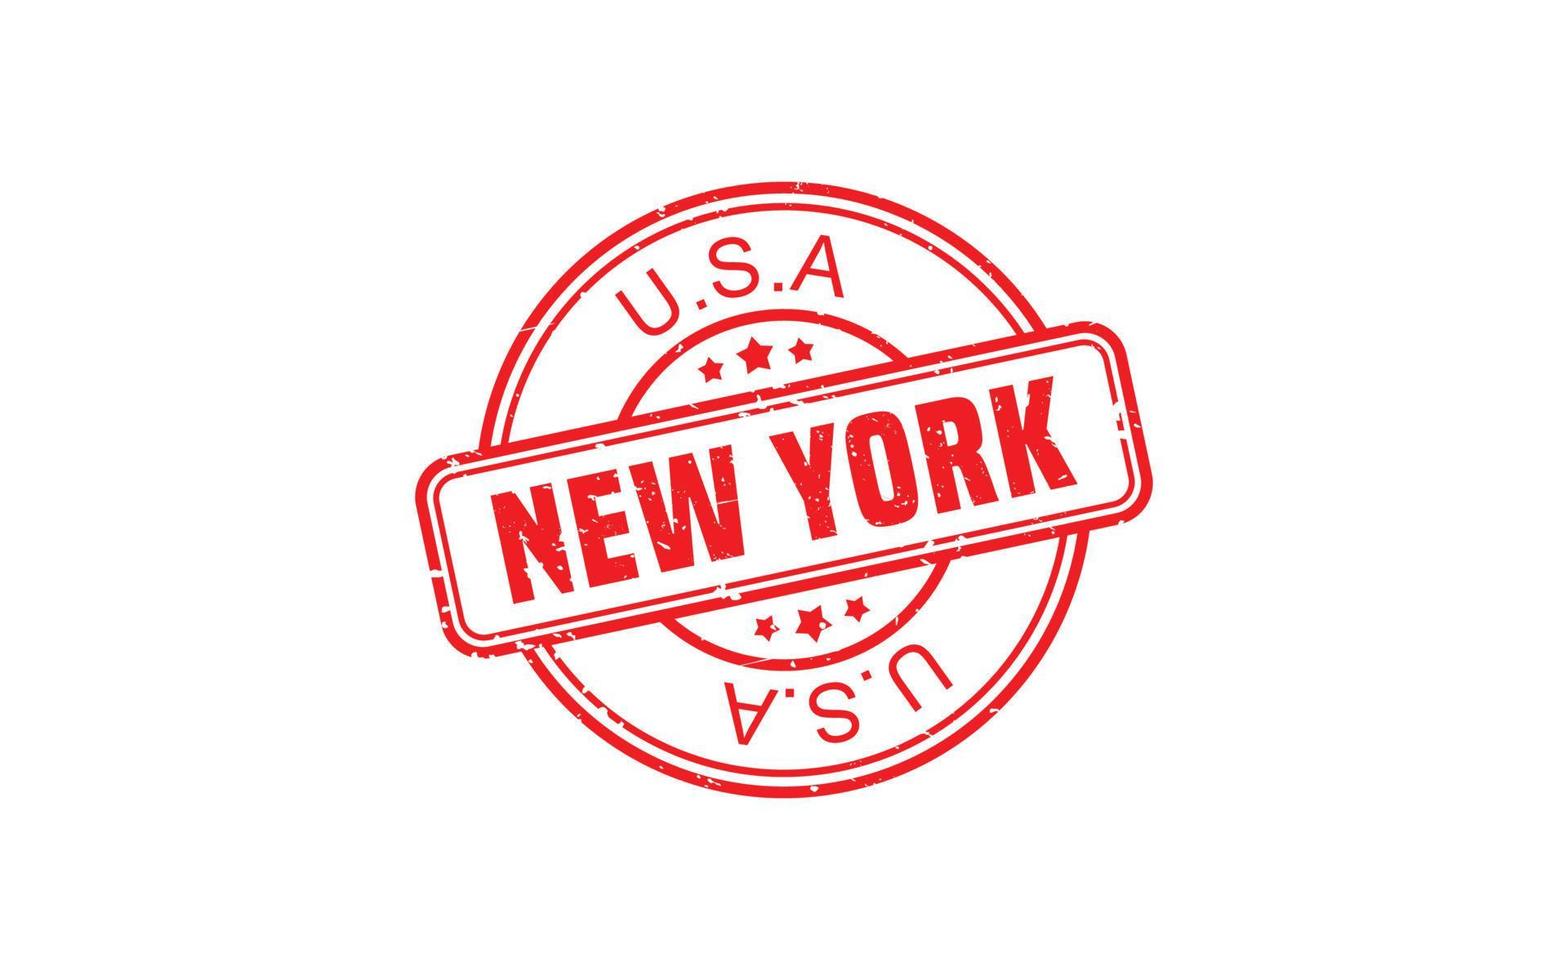 nuovo York gomma da cancellare francobollo struttura con grunge stile su bianca sfondo vettore